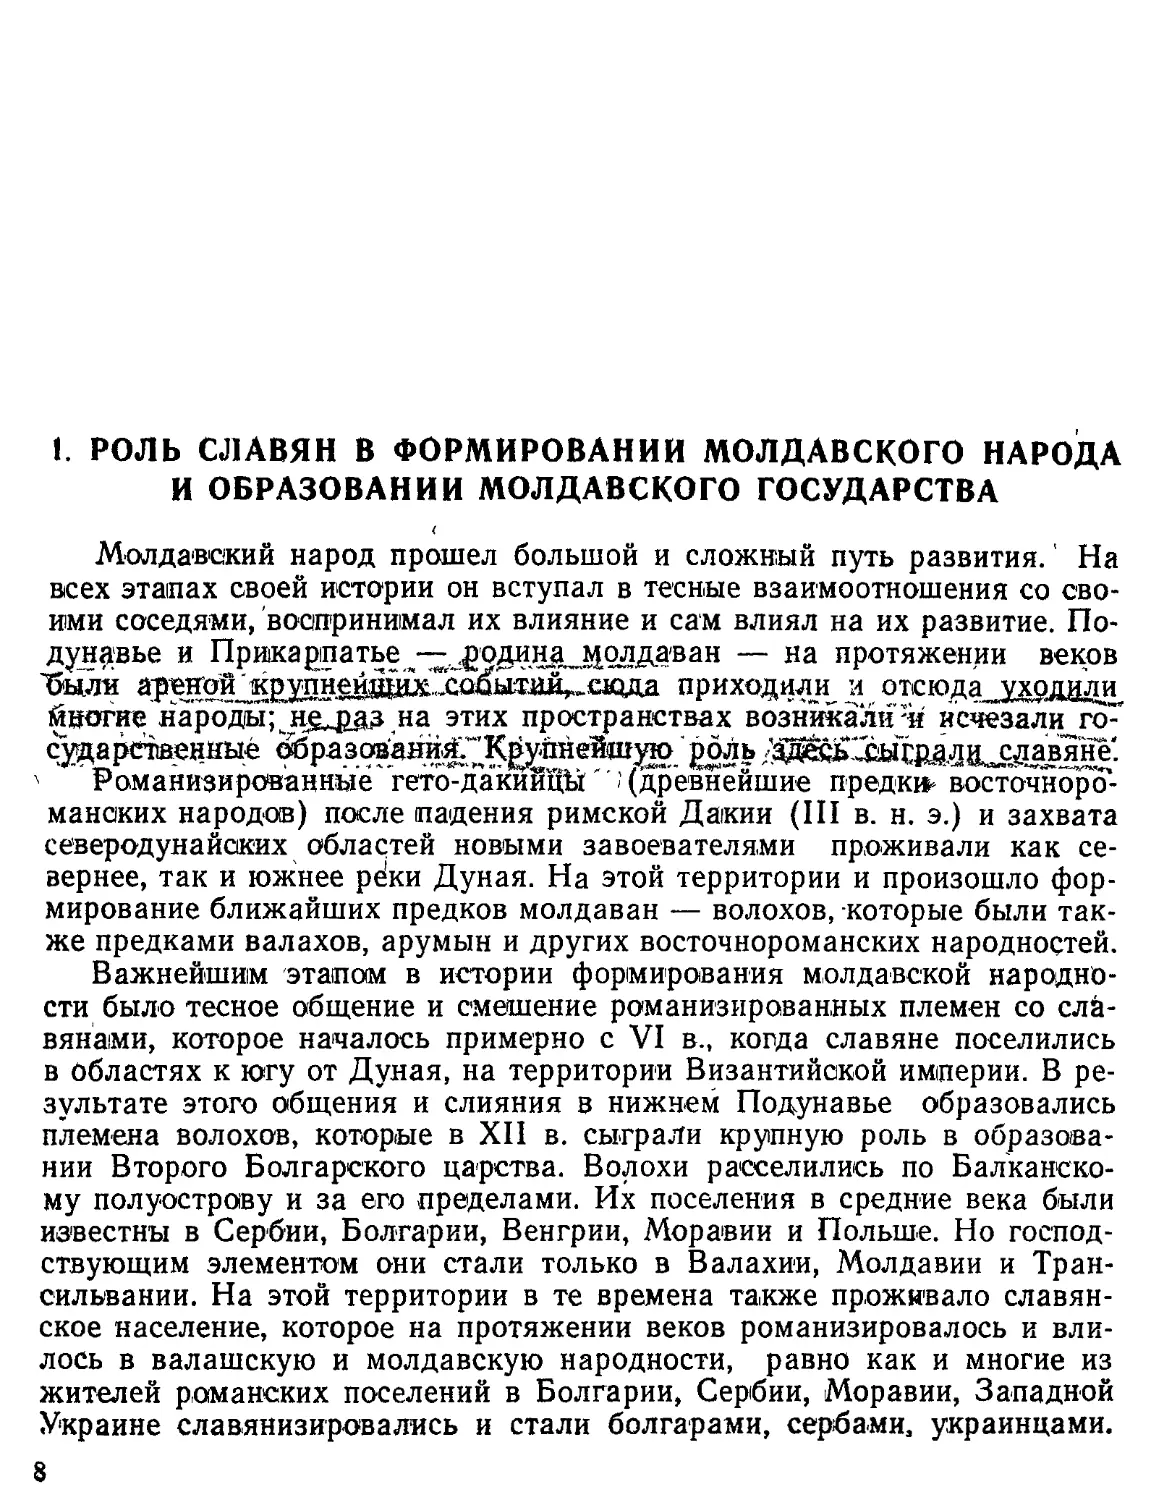 Роль славян в формировании молдавского народа и образовании Молдавского государства